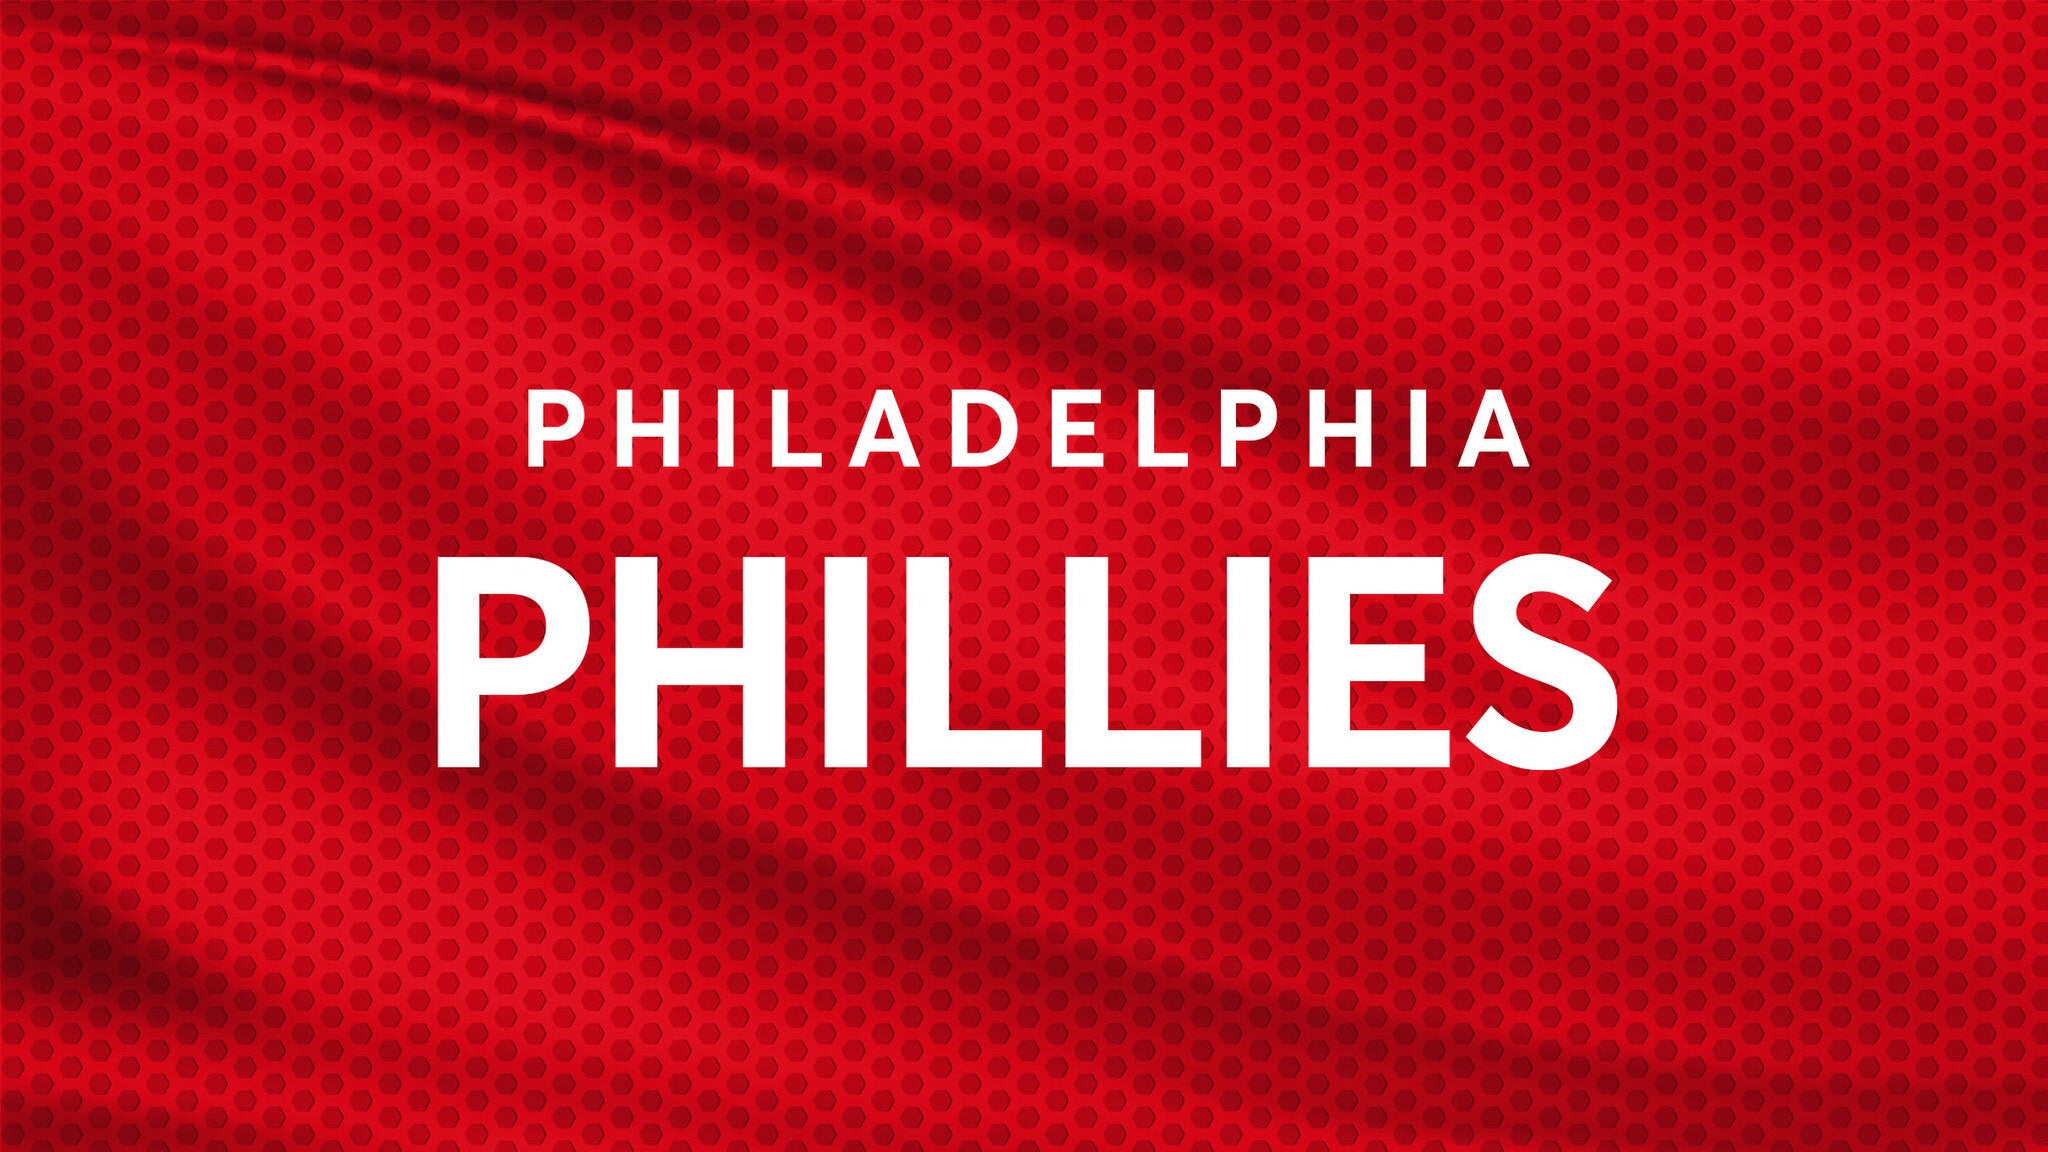 Philadelphia Phillies vs. Colorado Rockies